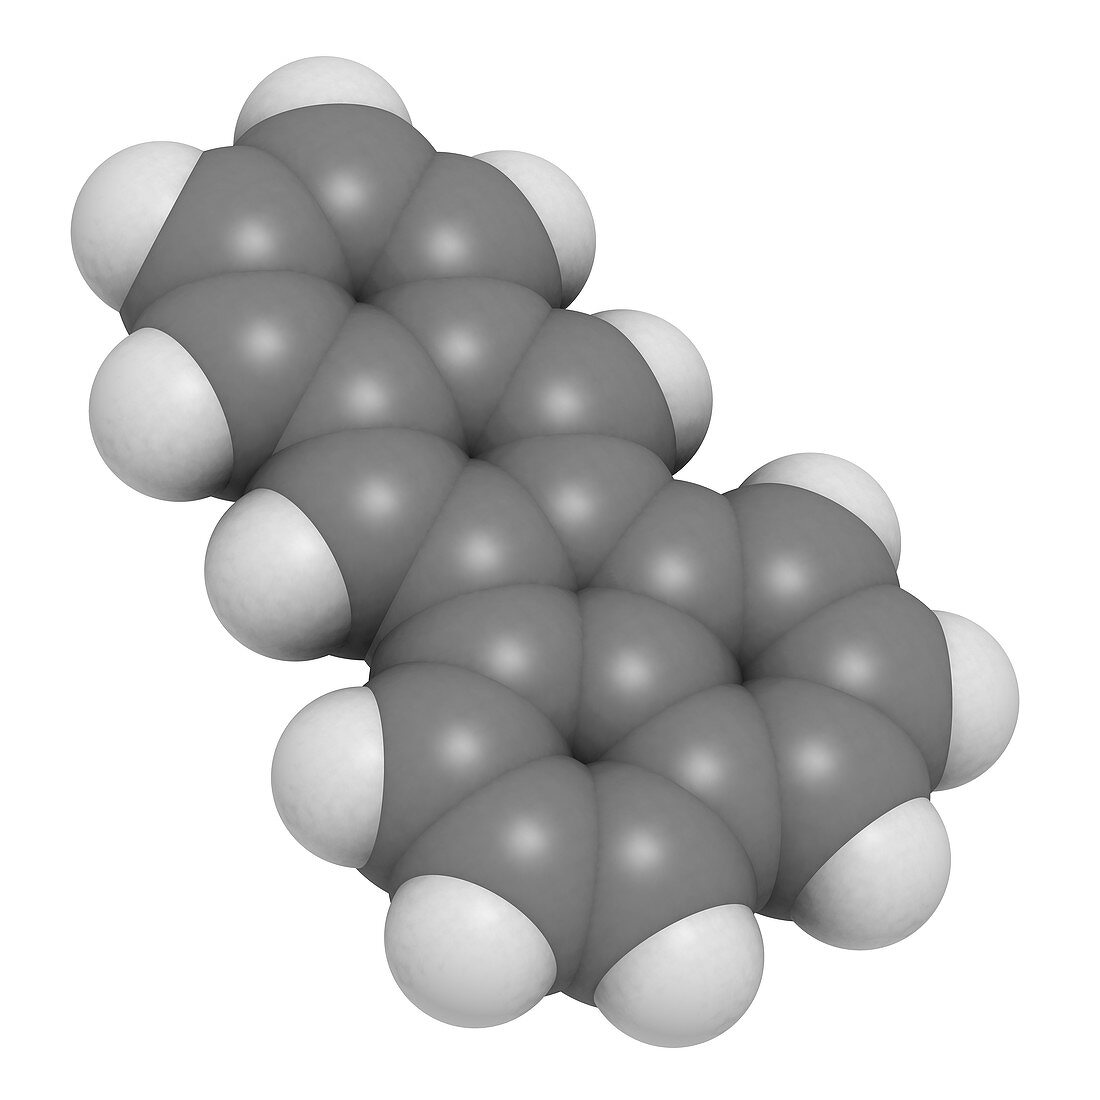 Benzofluoranthene,molecular model